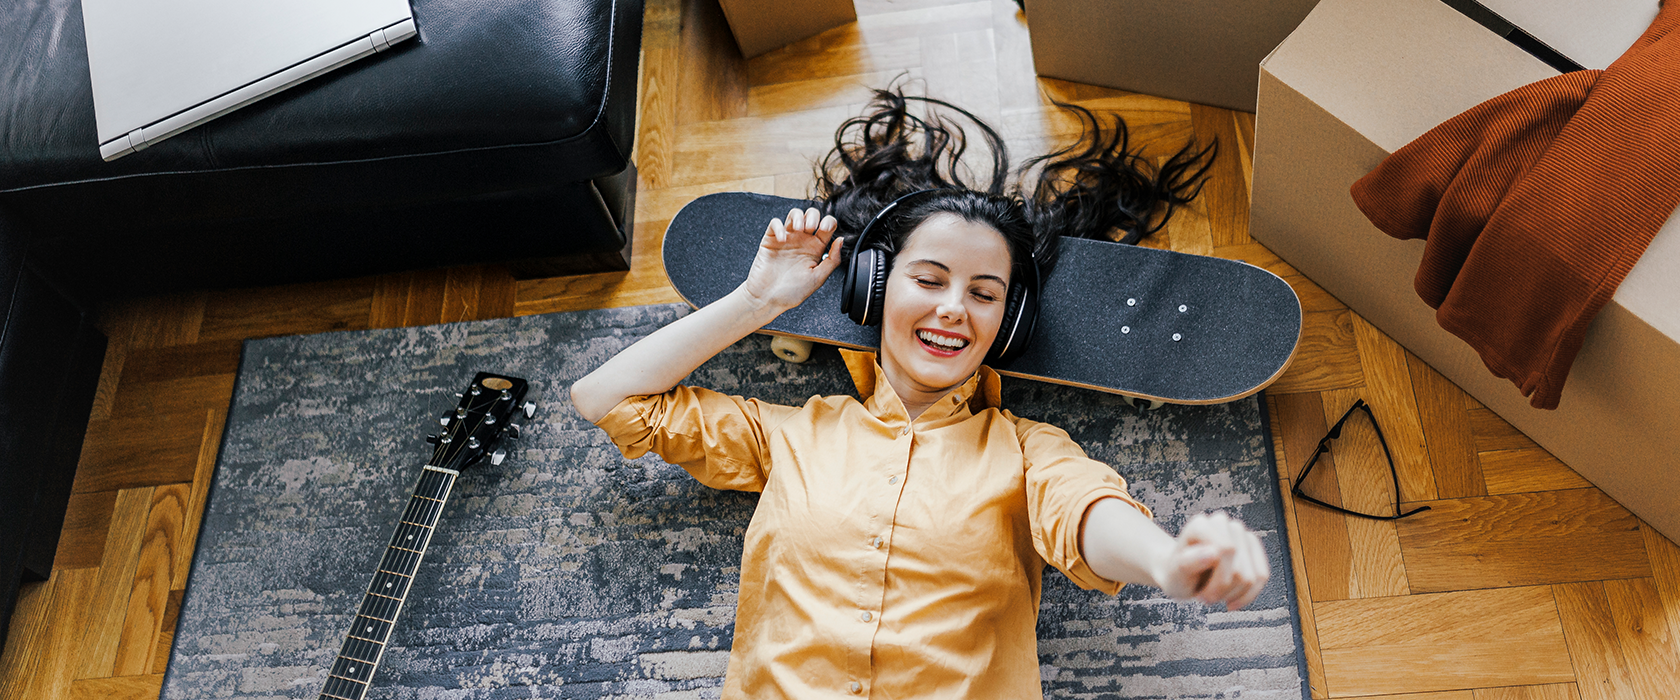 Eine junge Frau chillt zwichen Umzugskartons auf dem Boden und hört Musik. Ein Skateboard dient ihr als Kissen.